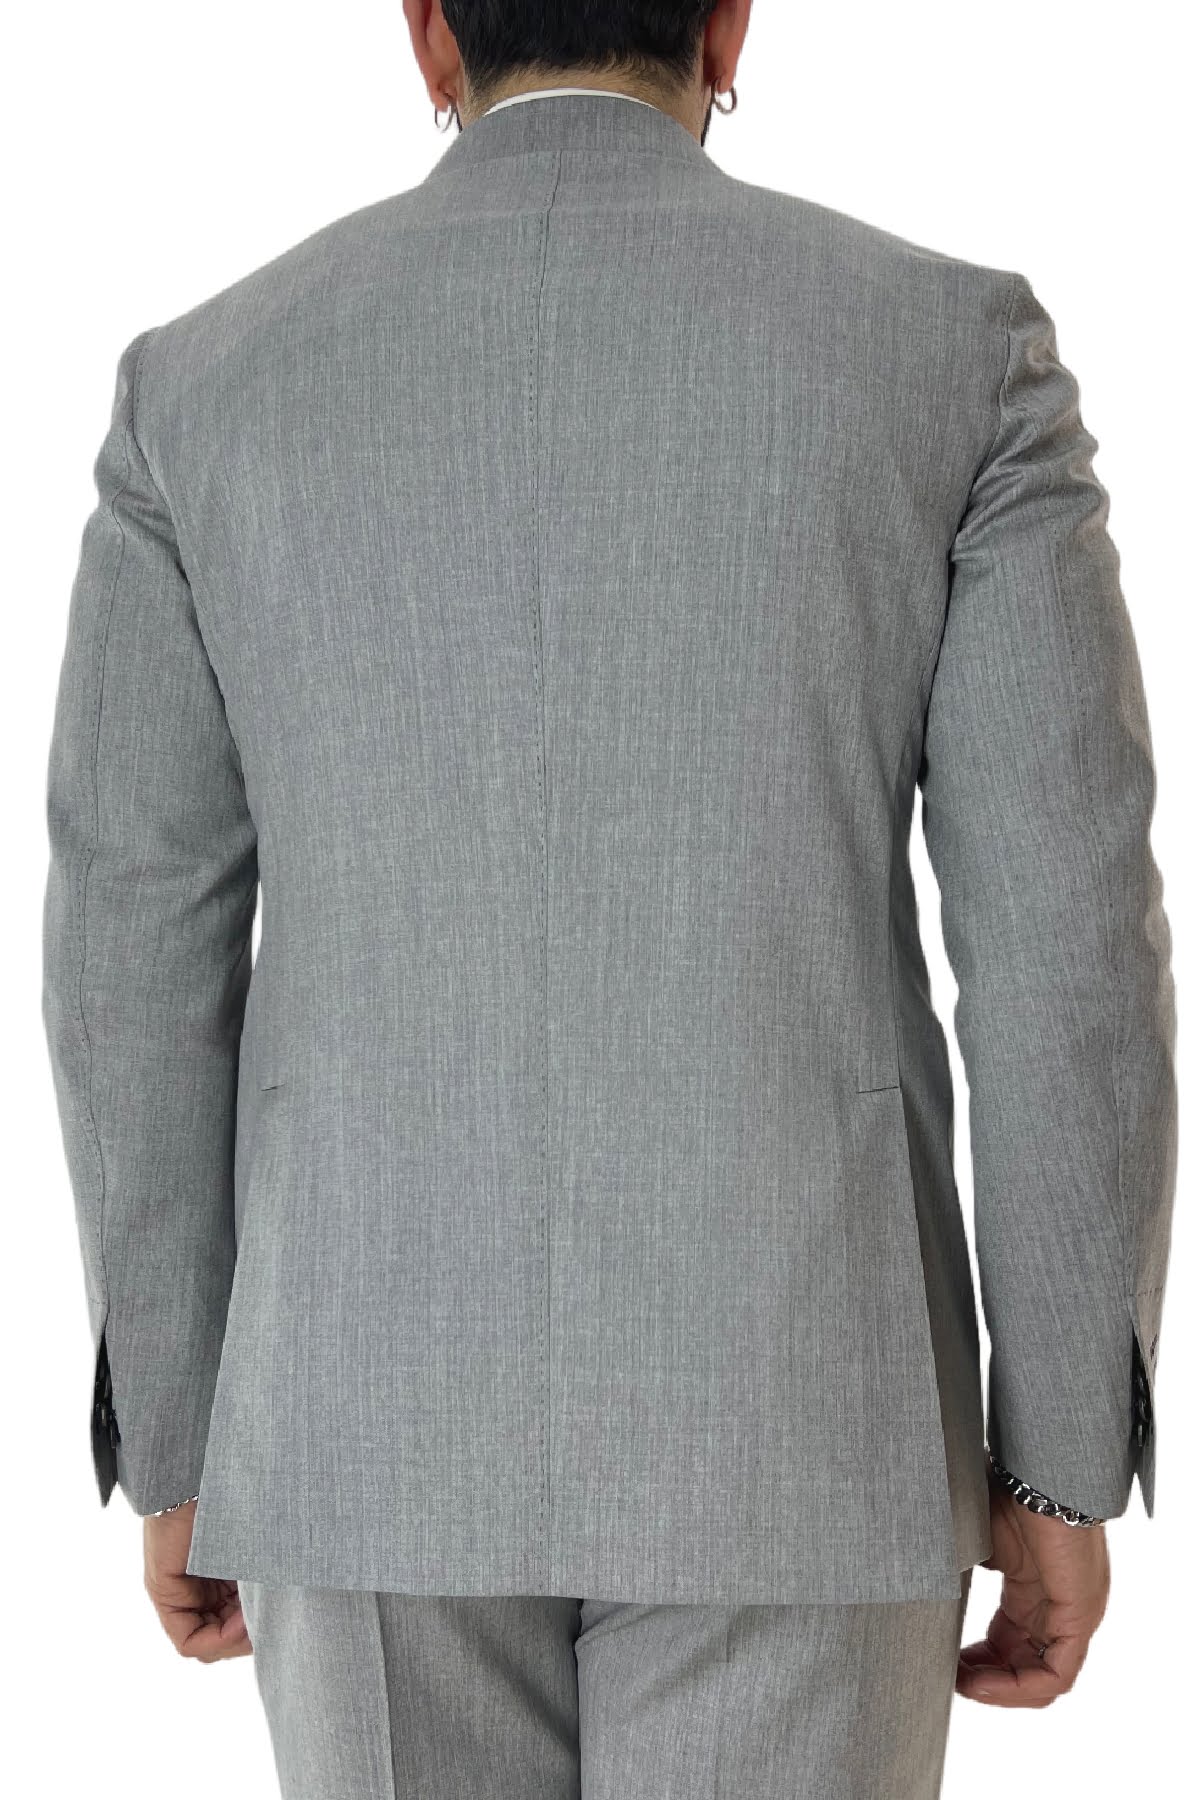 Giacca uomo doppiopetto grigio chiaro in fresco lana 100% Vitale Barberis